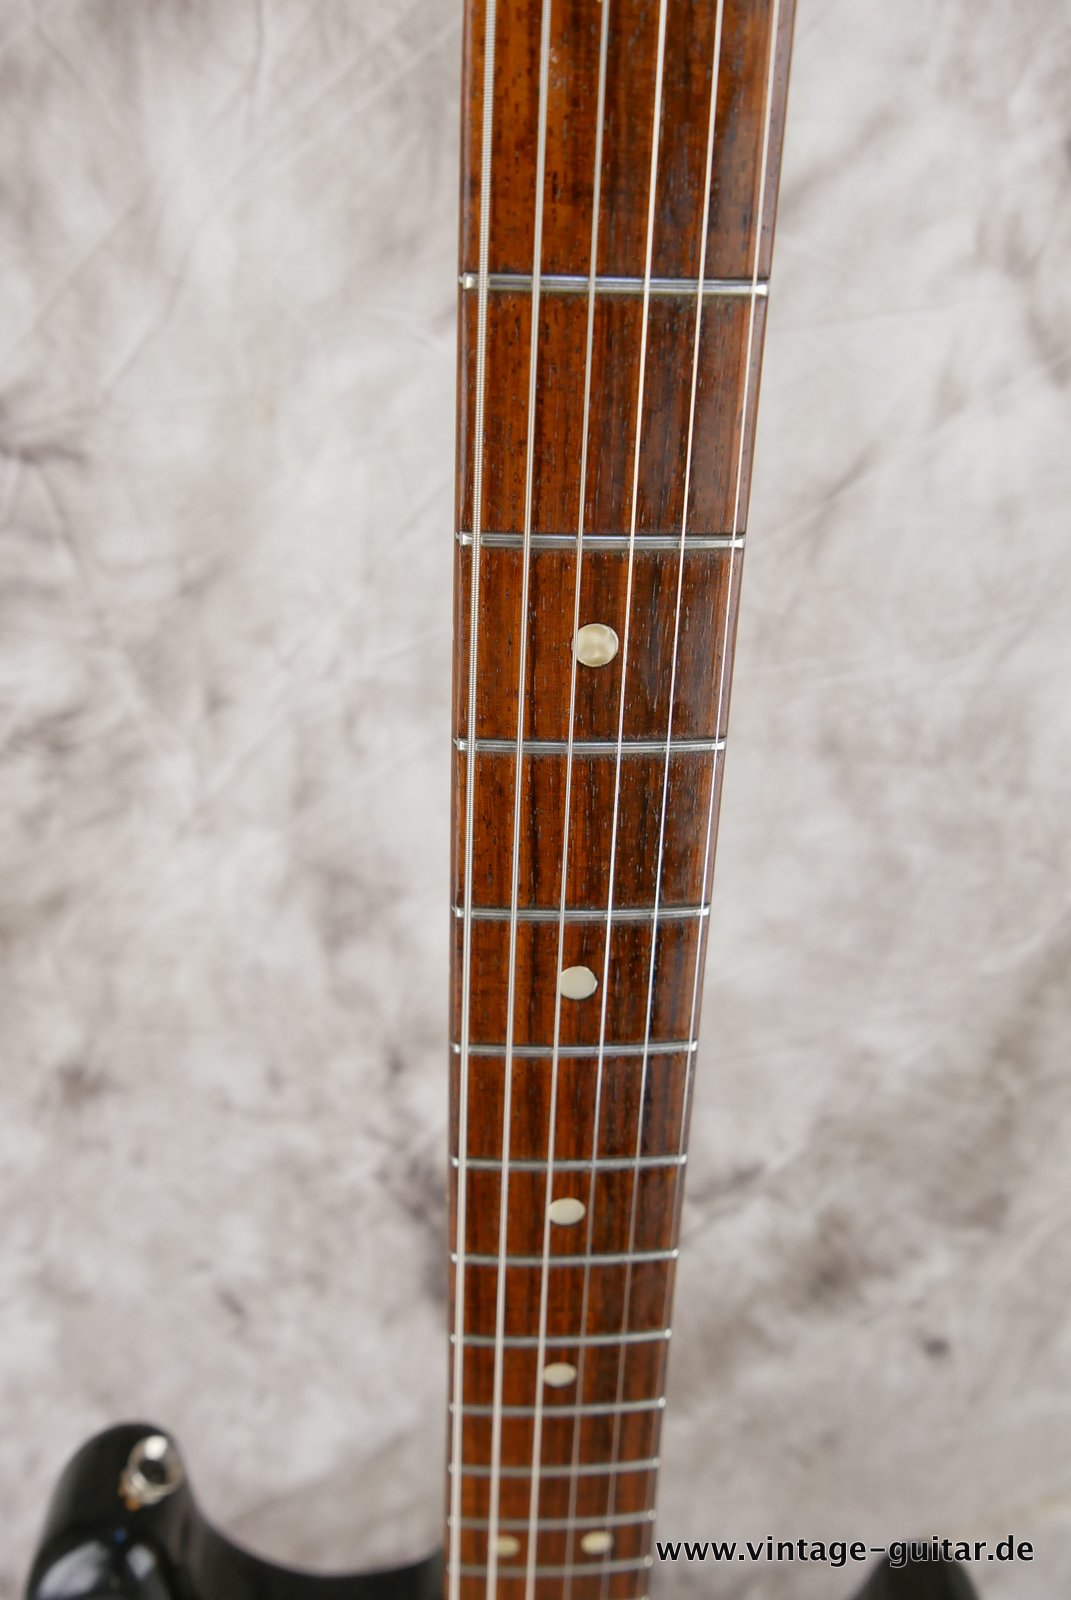 Fender-Stratocaster-1972-sunburst-4-hole-011.JPG